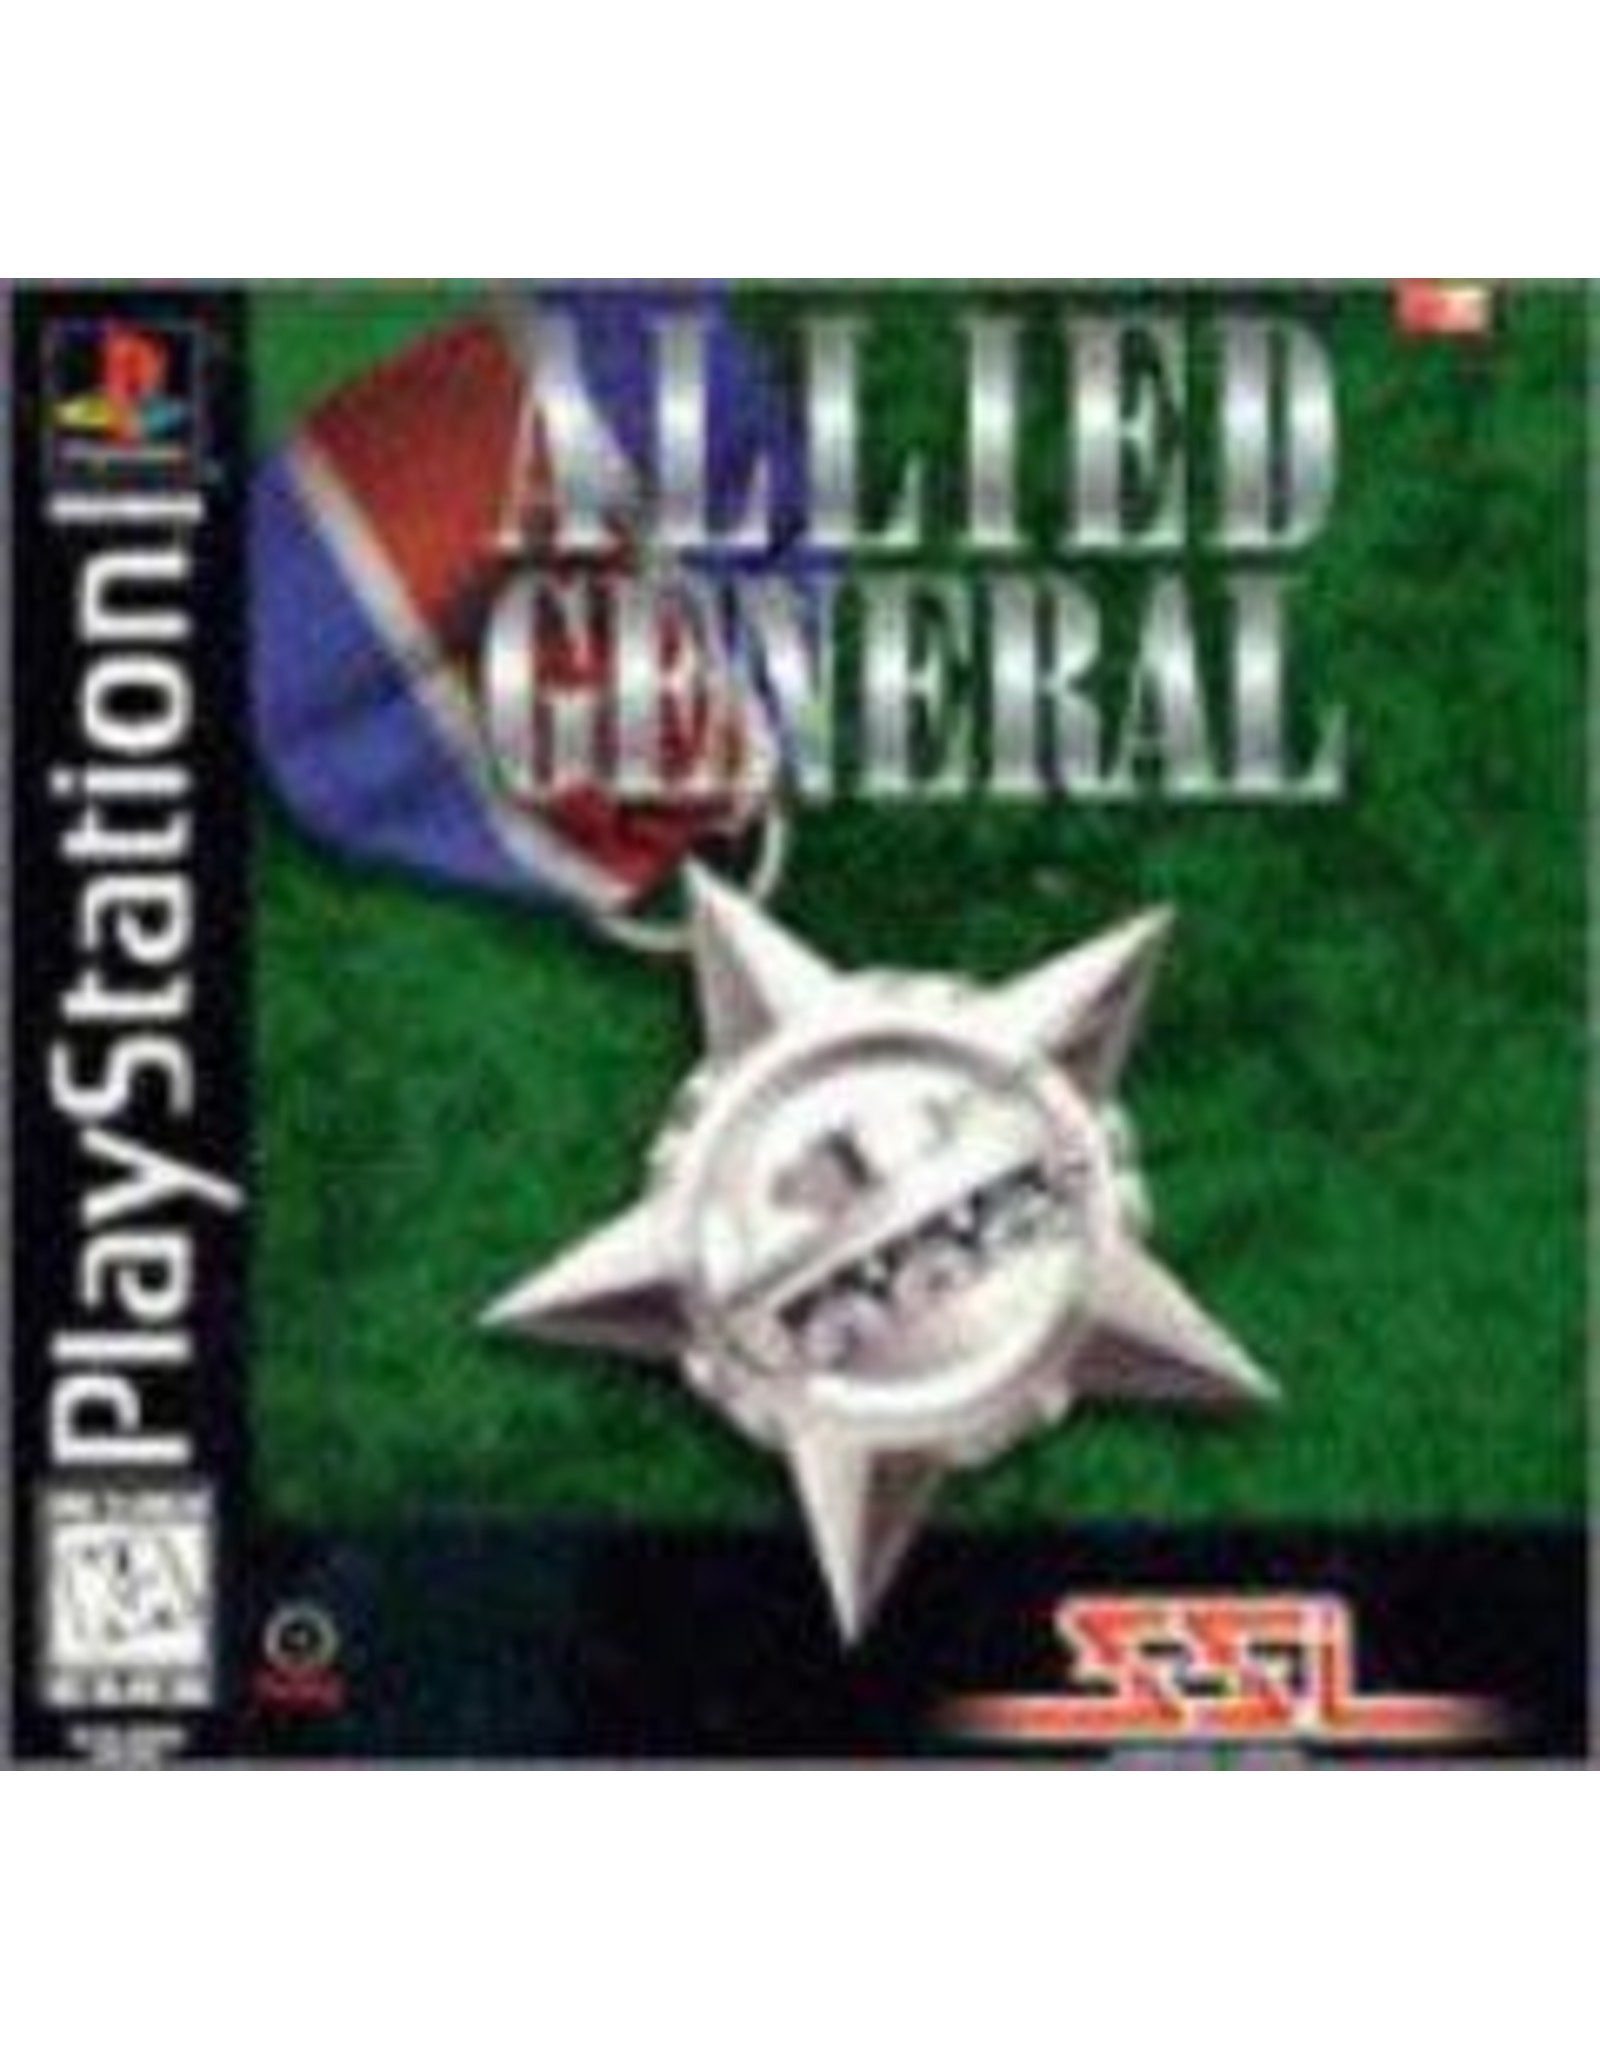 Playstation Allied General (CiB, Damaged Manual)